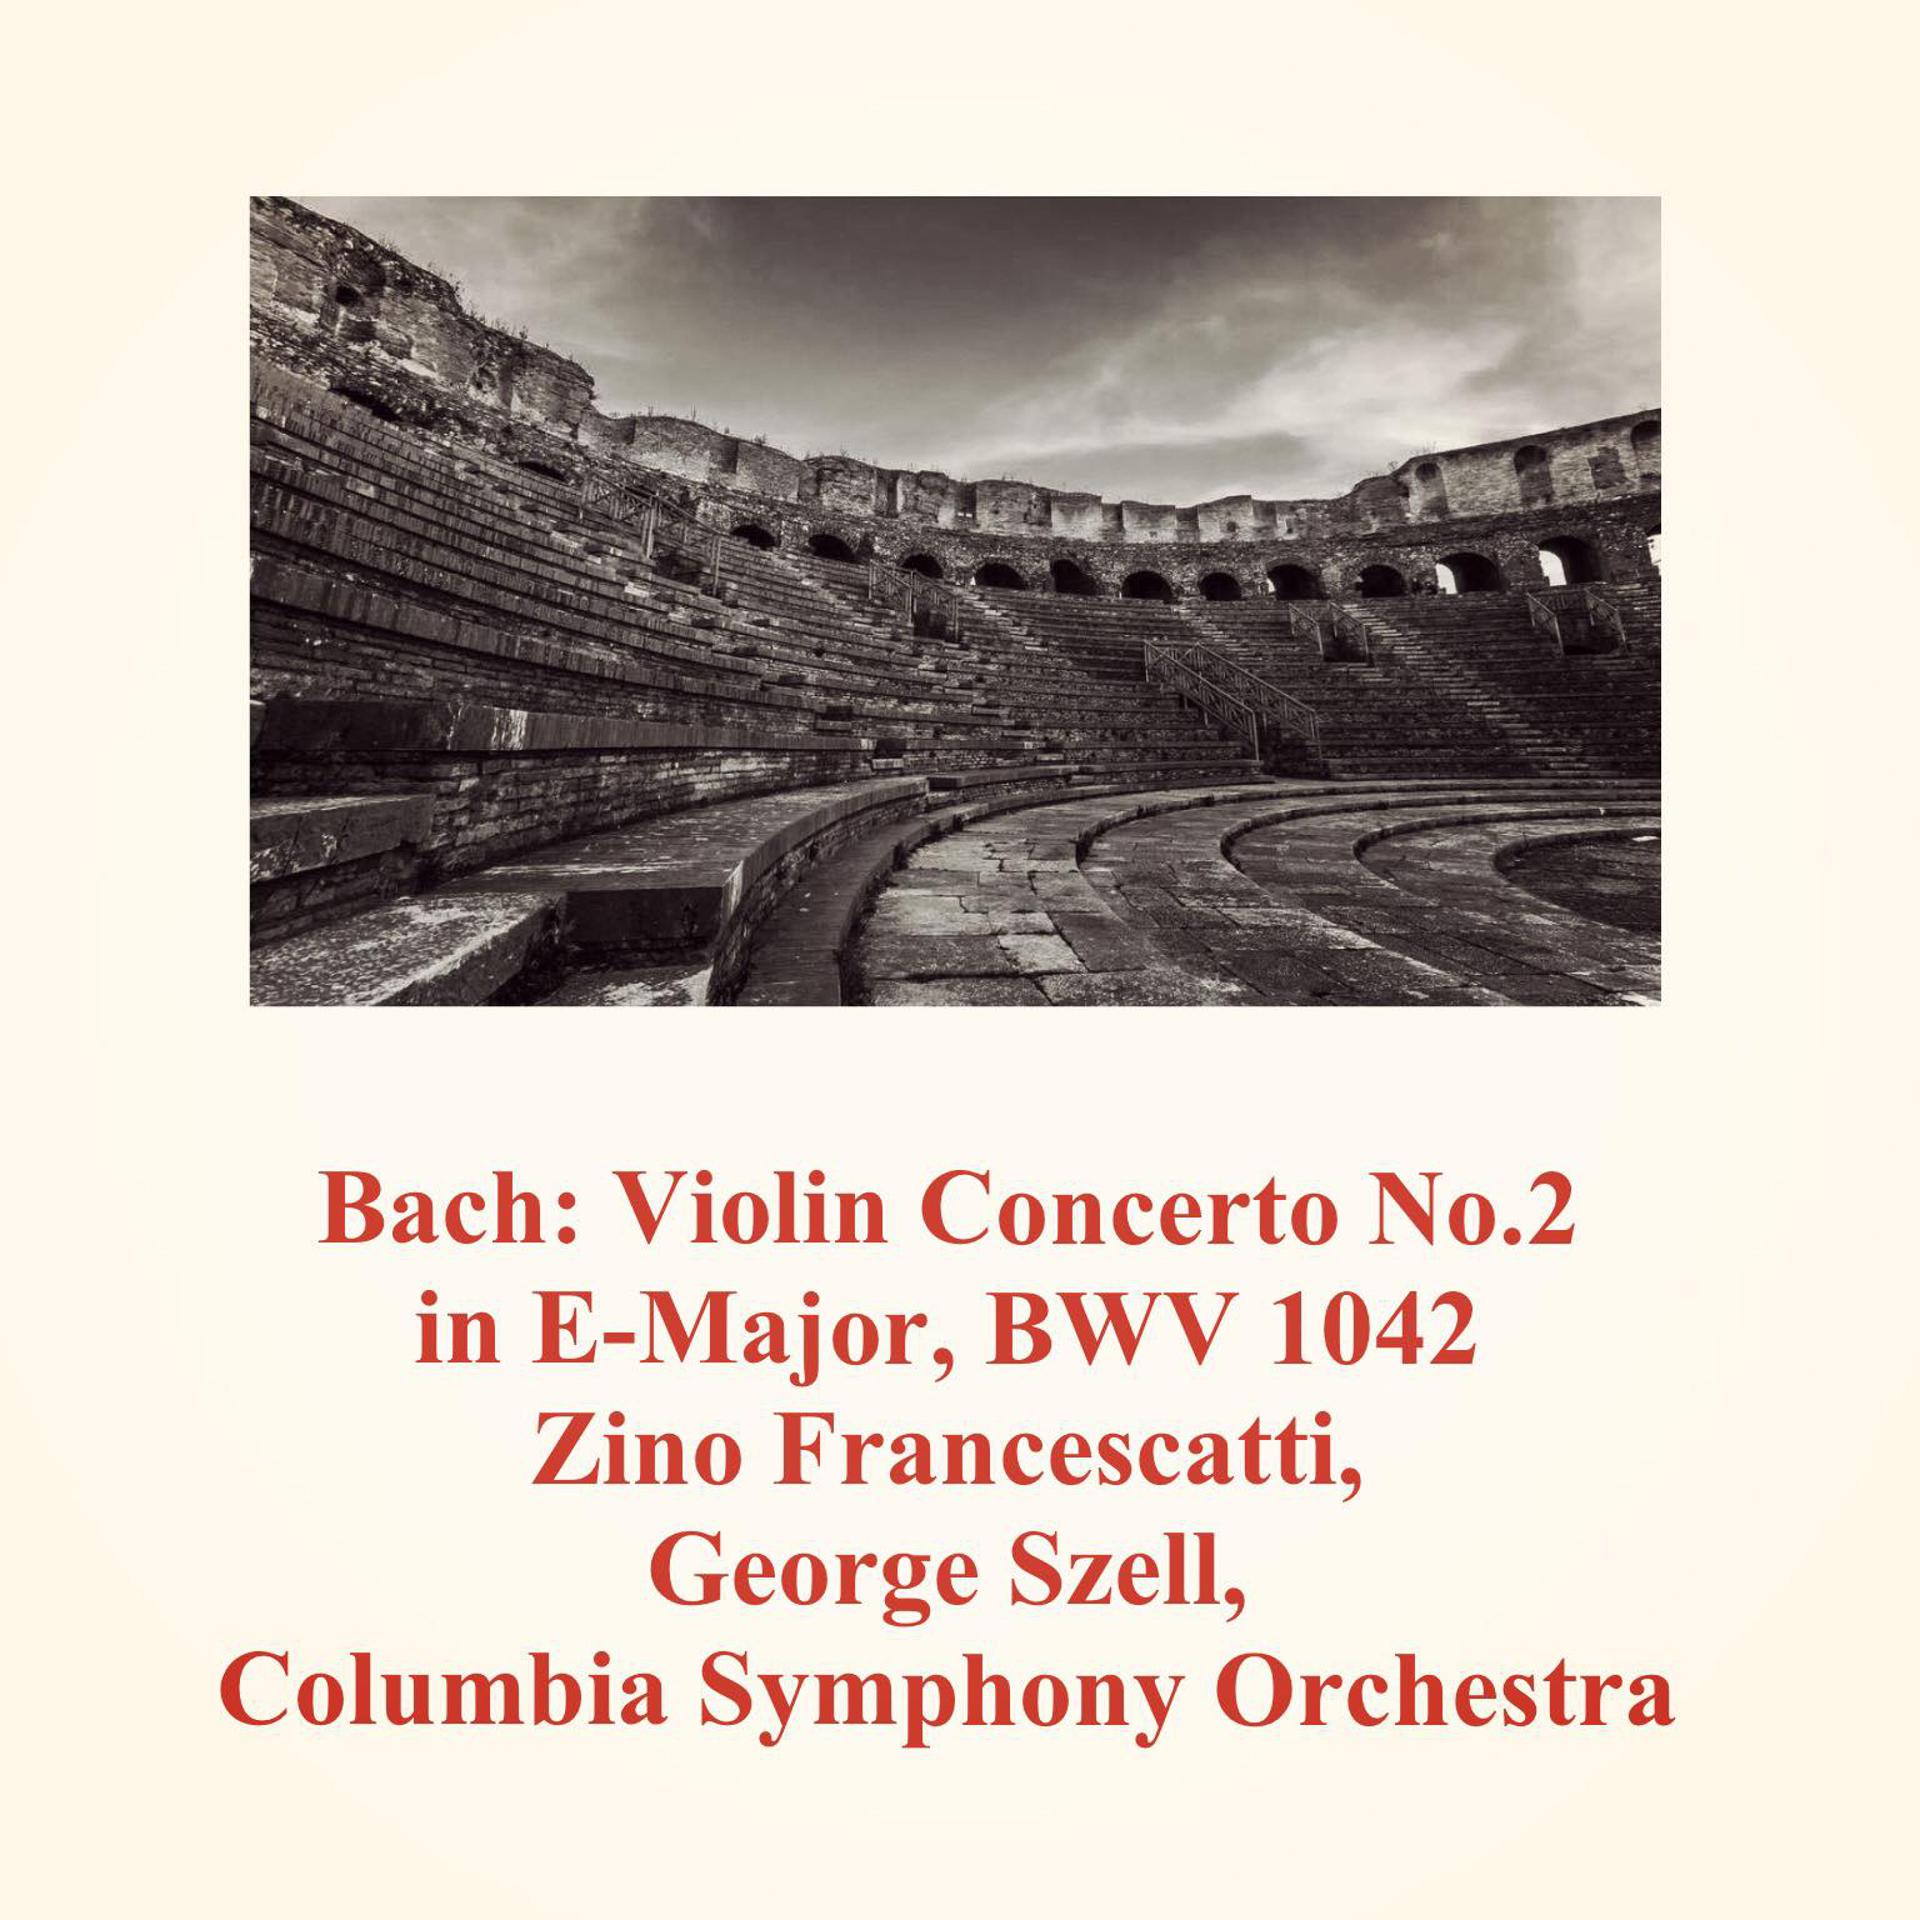 Постер альбома Prokofiev: Violin Concerto No.2 in G Minor, Op.63